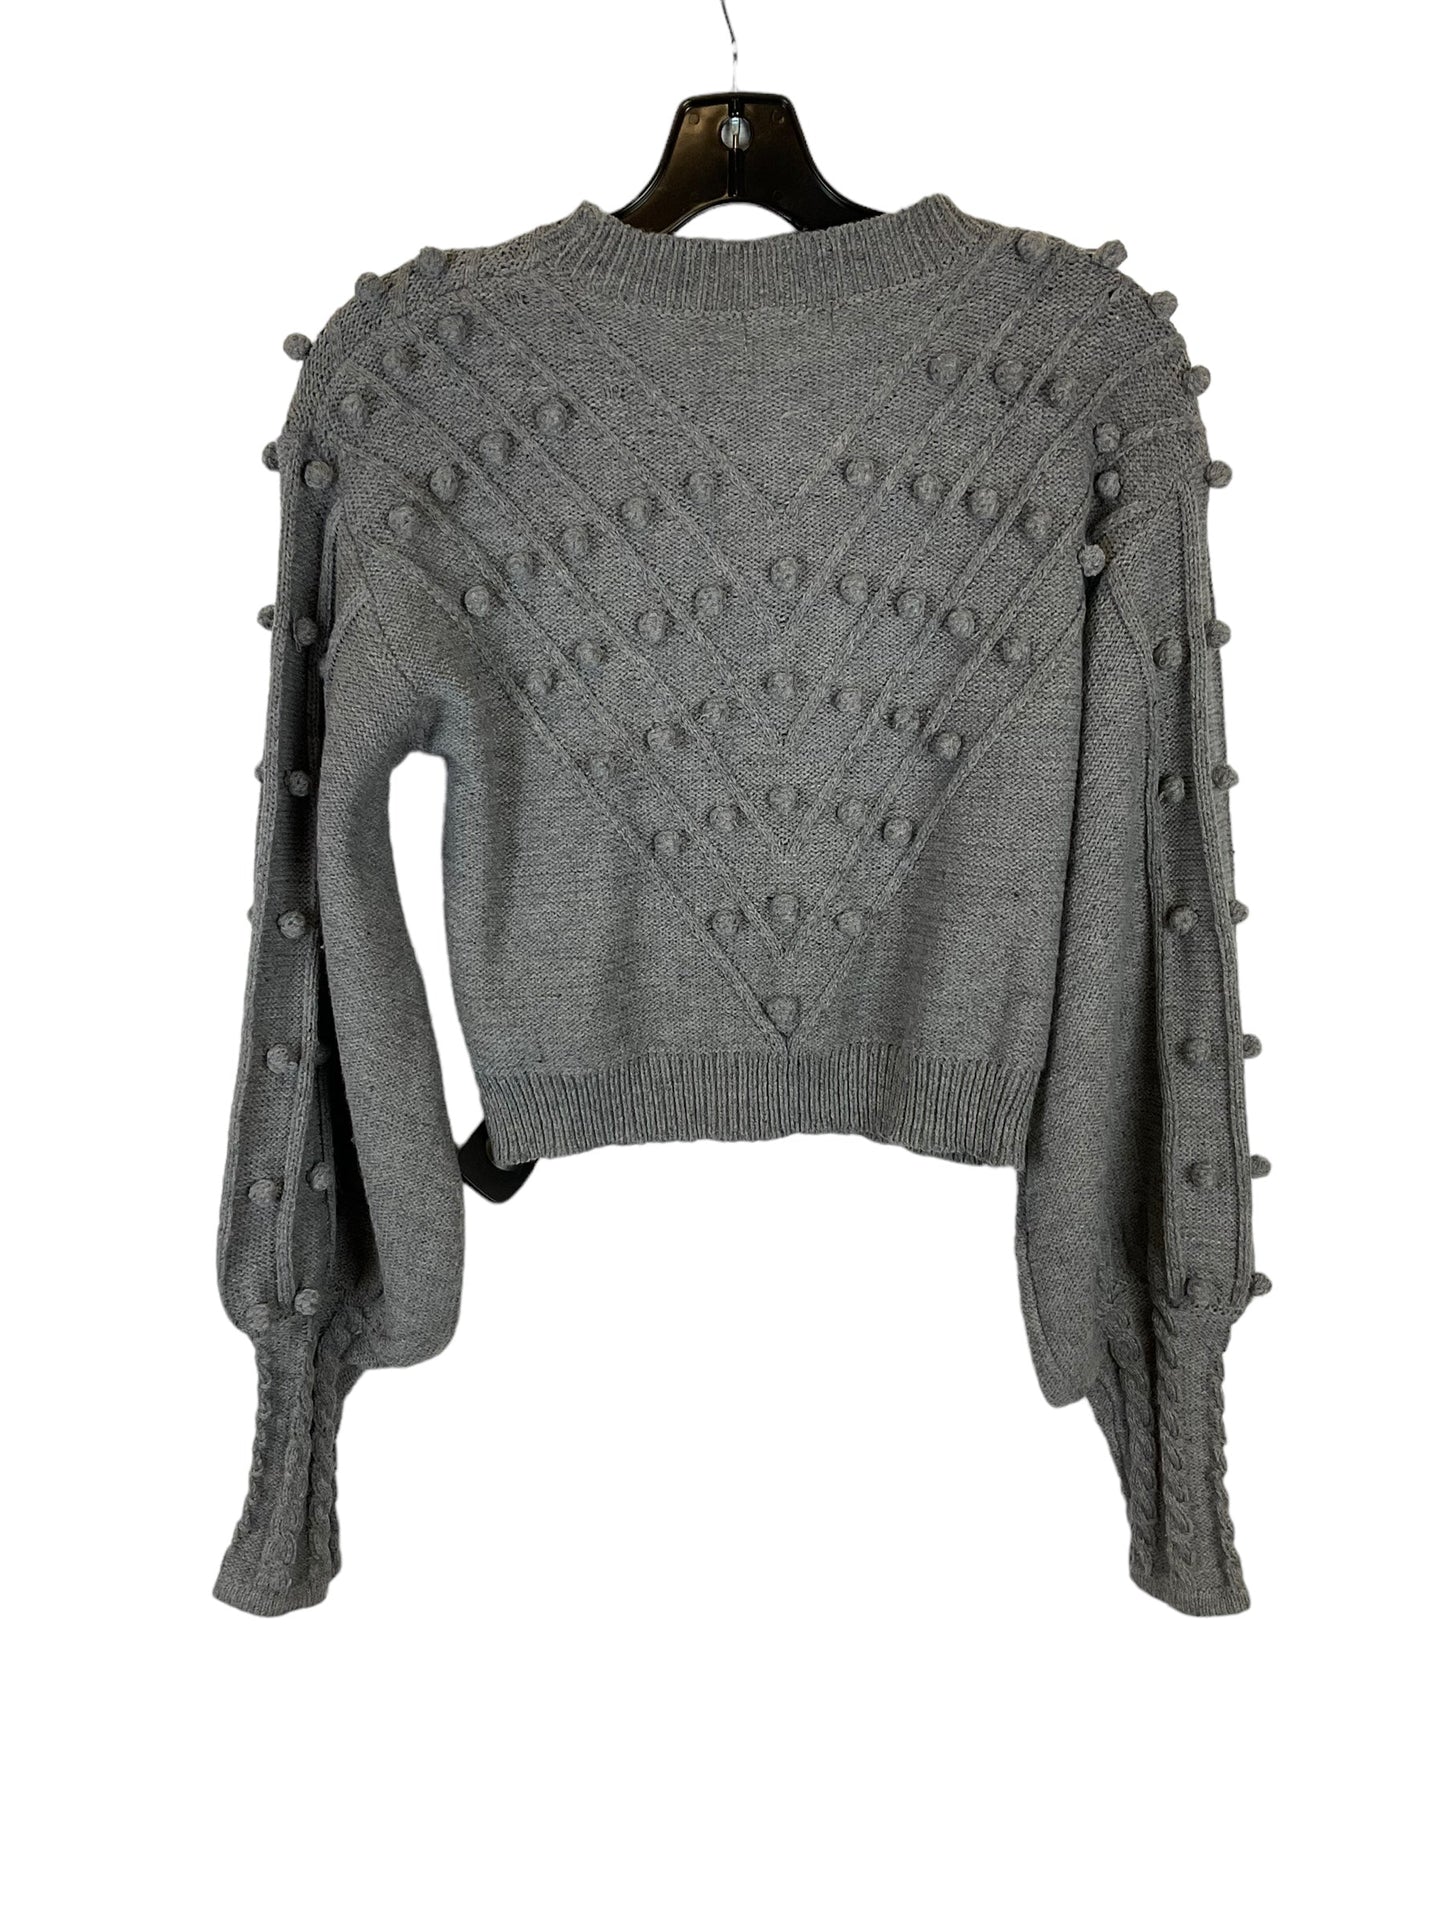 Sweater By Vestique  Size: S